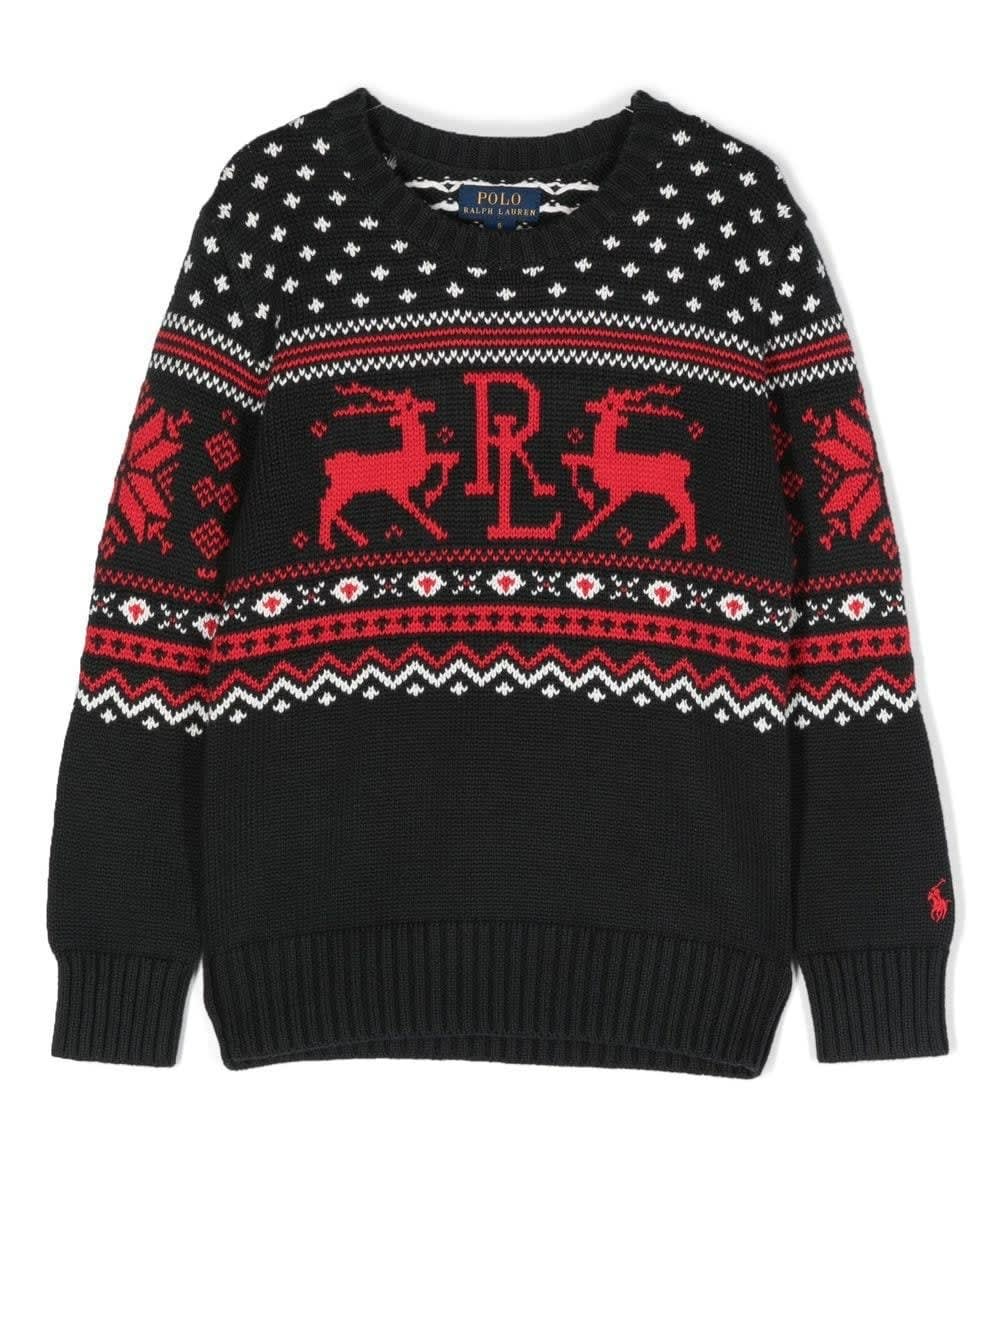 Ralph Lauren Kids Sweater In Black Cotton With Red Reindeer